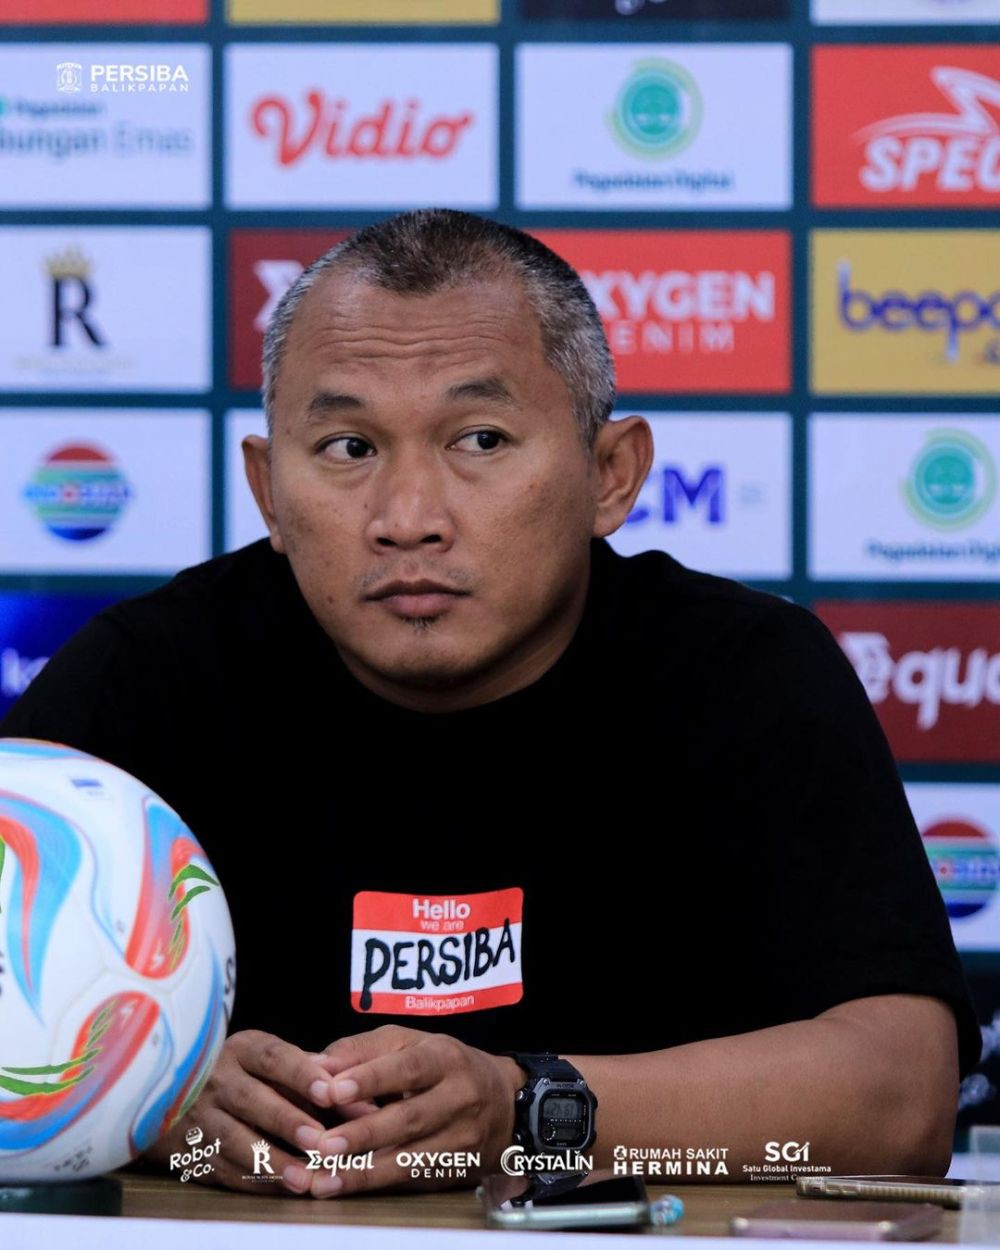 Persiba Balikpapan Terancam Degradasi, Kalah dalam Playoff di Manado